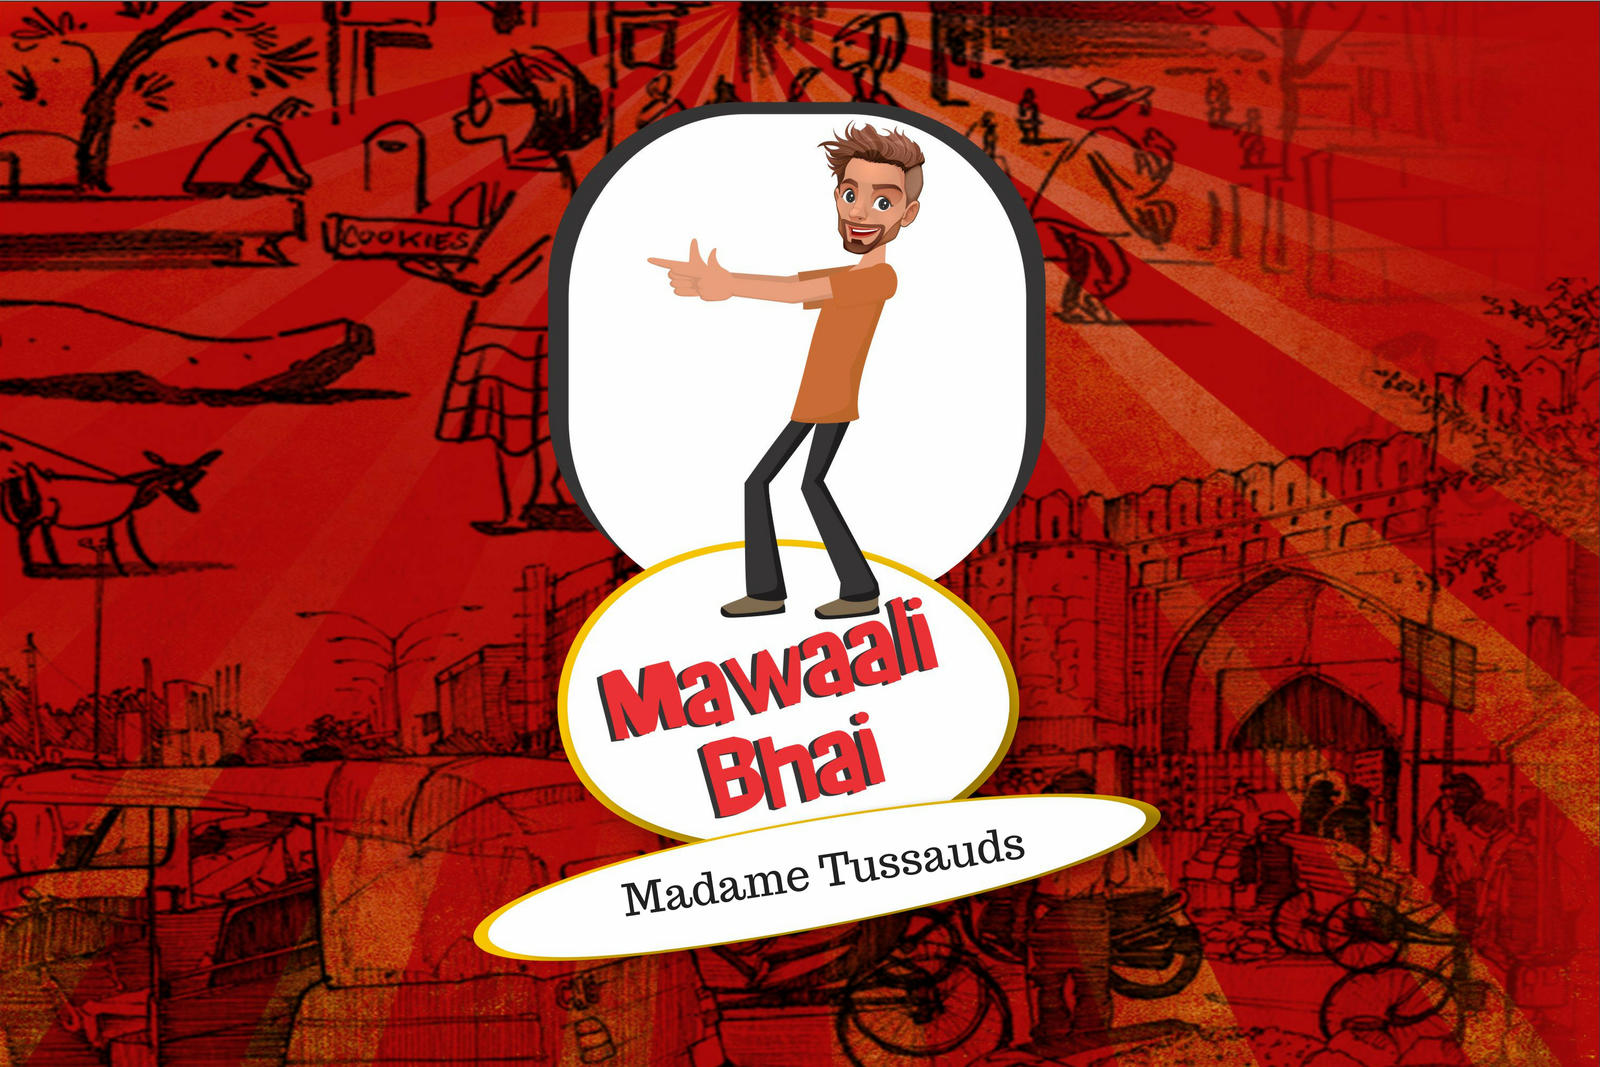 Mawaali Bhai - Madame Tussauds